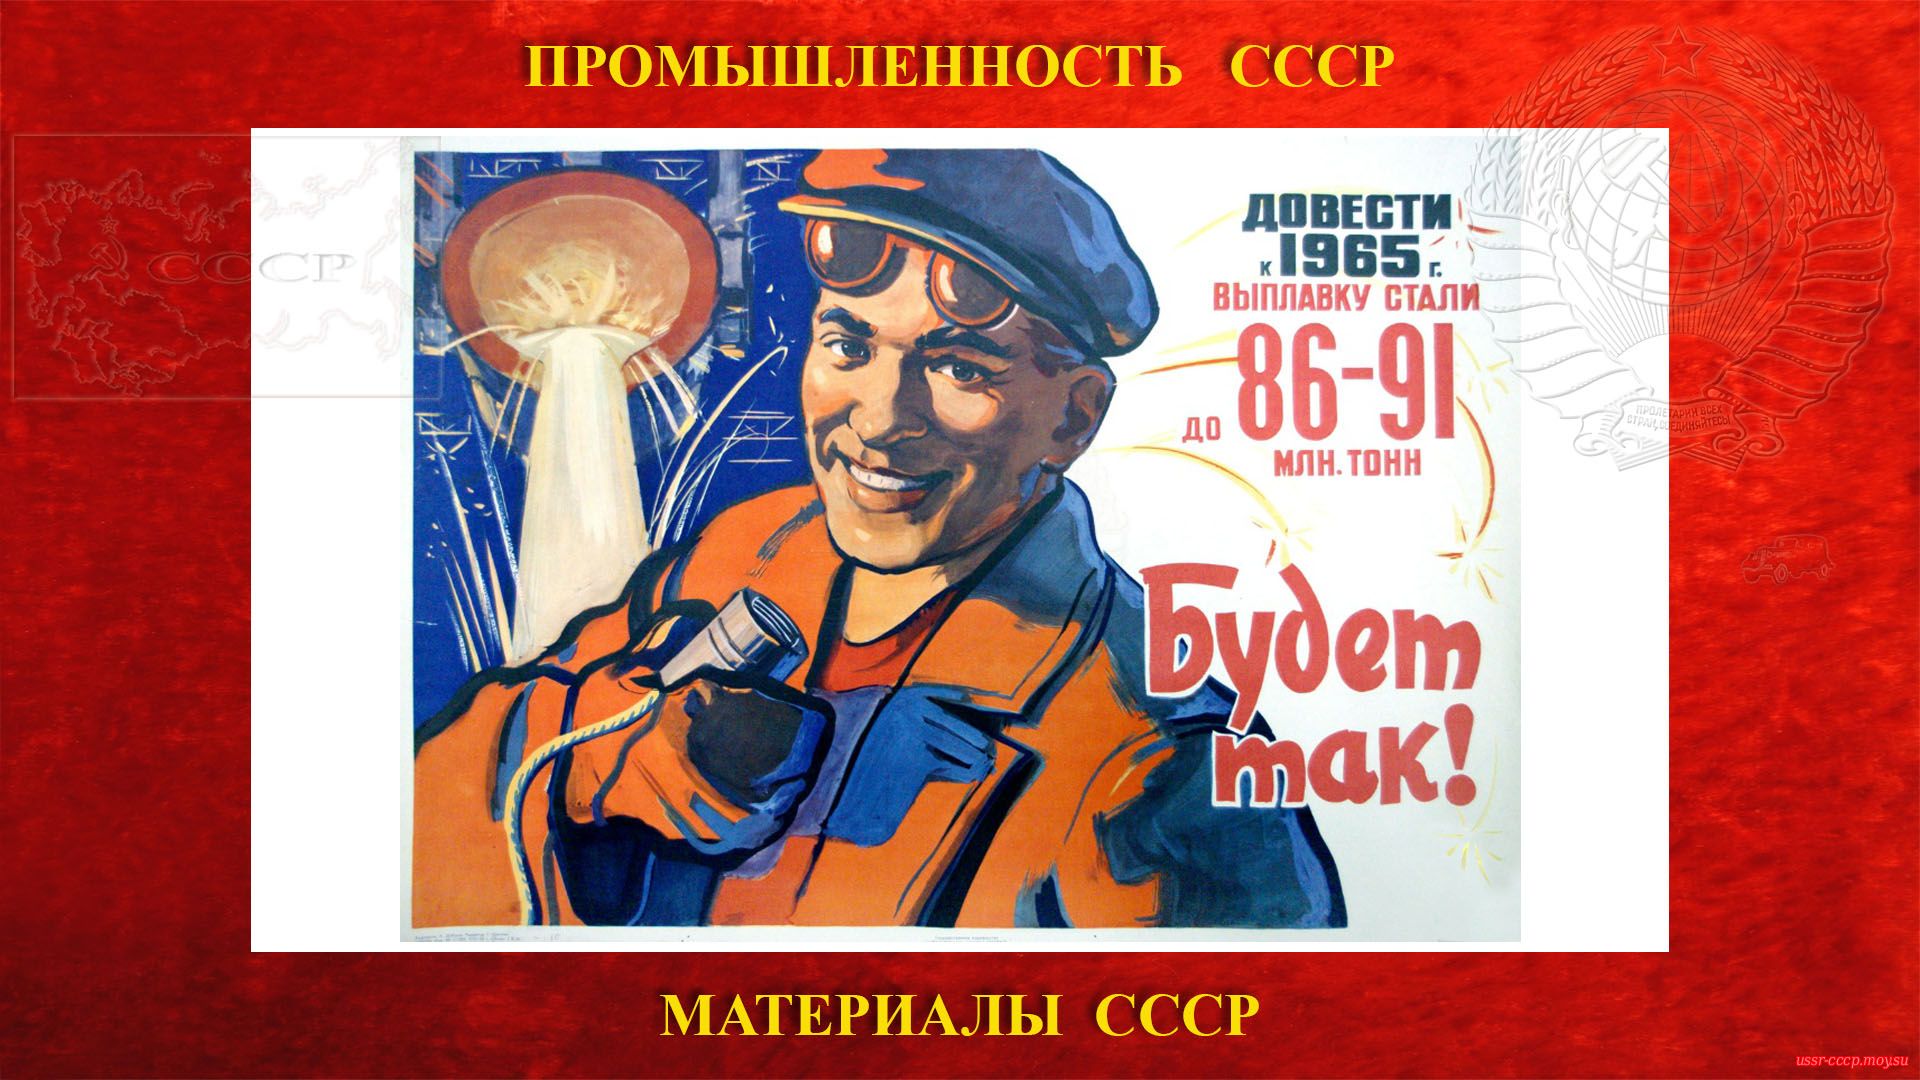 Довести к 1965 г. выплавку стали до 86-91 млн. тонн Будет так! (плакат СССР).